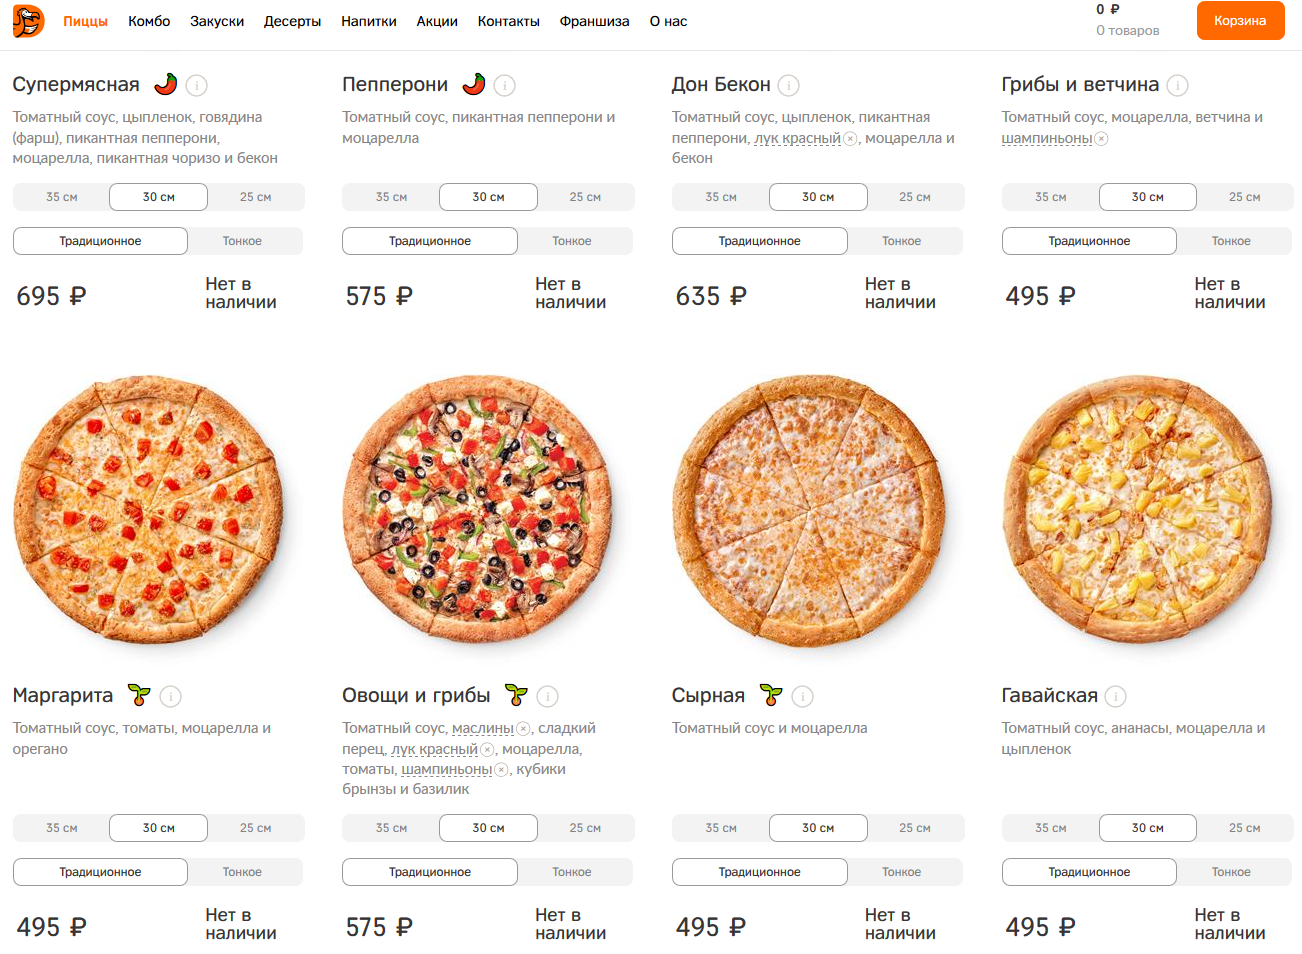 Долго пицца. Додо пицца пепперони калорийность. Додо пицца средняя вес 1 куска. Средняя пицца пепперони Додо пицца. Додо пицца пепперони калорийность 1 куска.